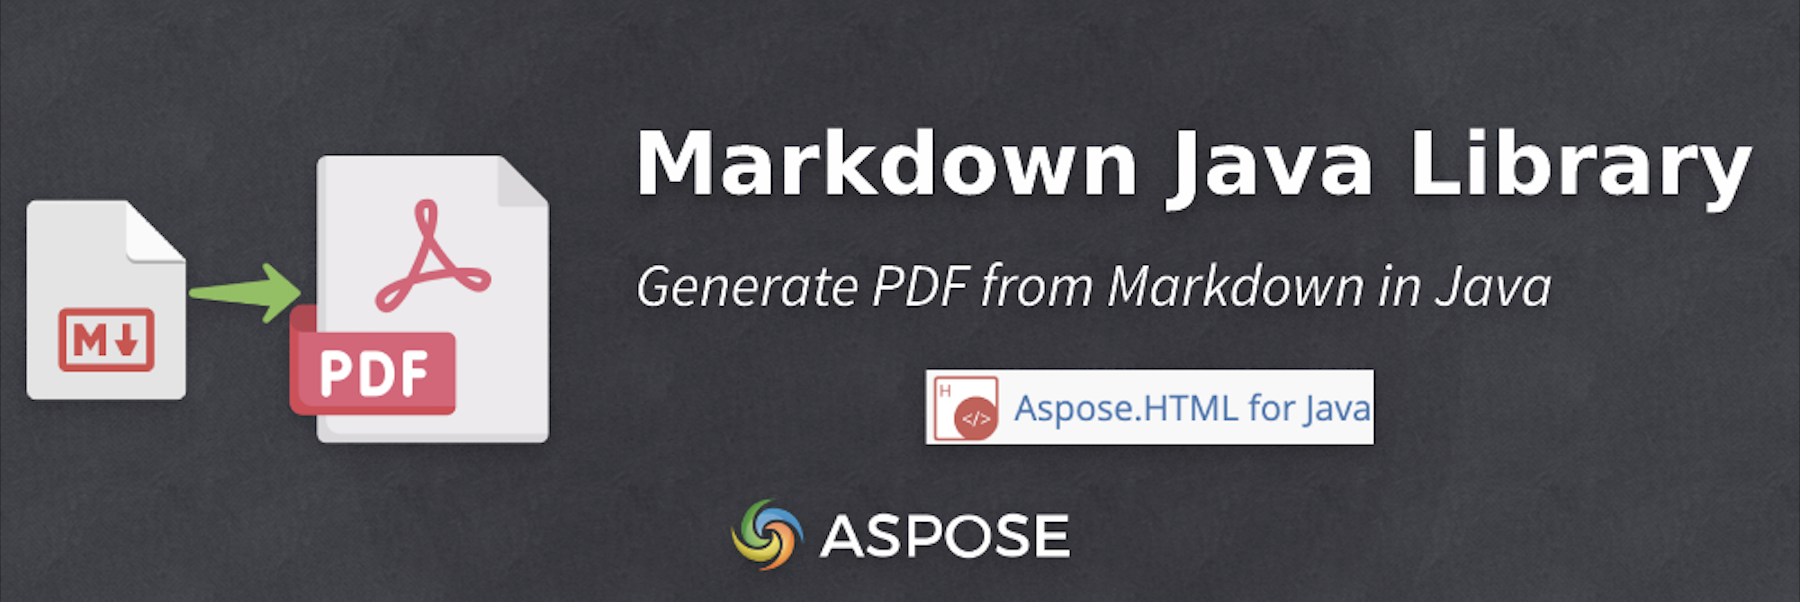 在 Java 中從 Markdown 產生 PDF - Markdown 到 PDF